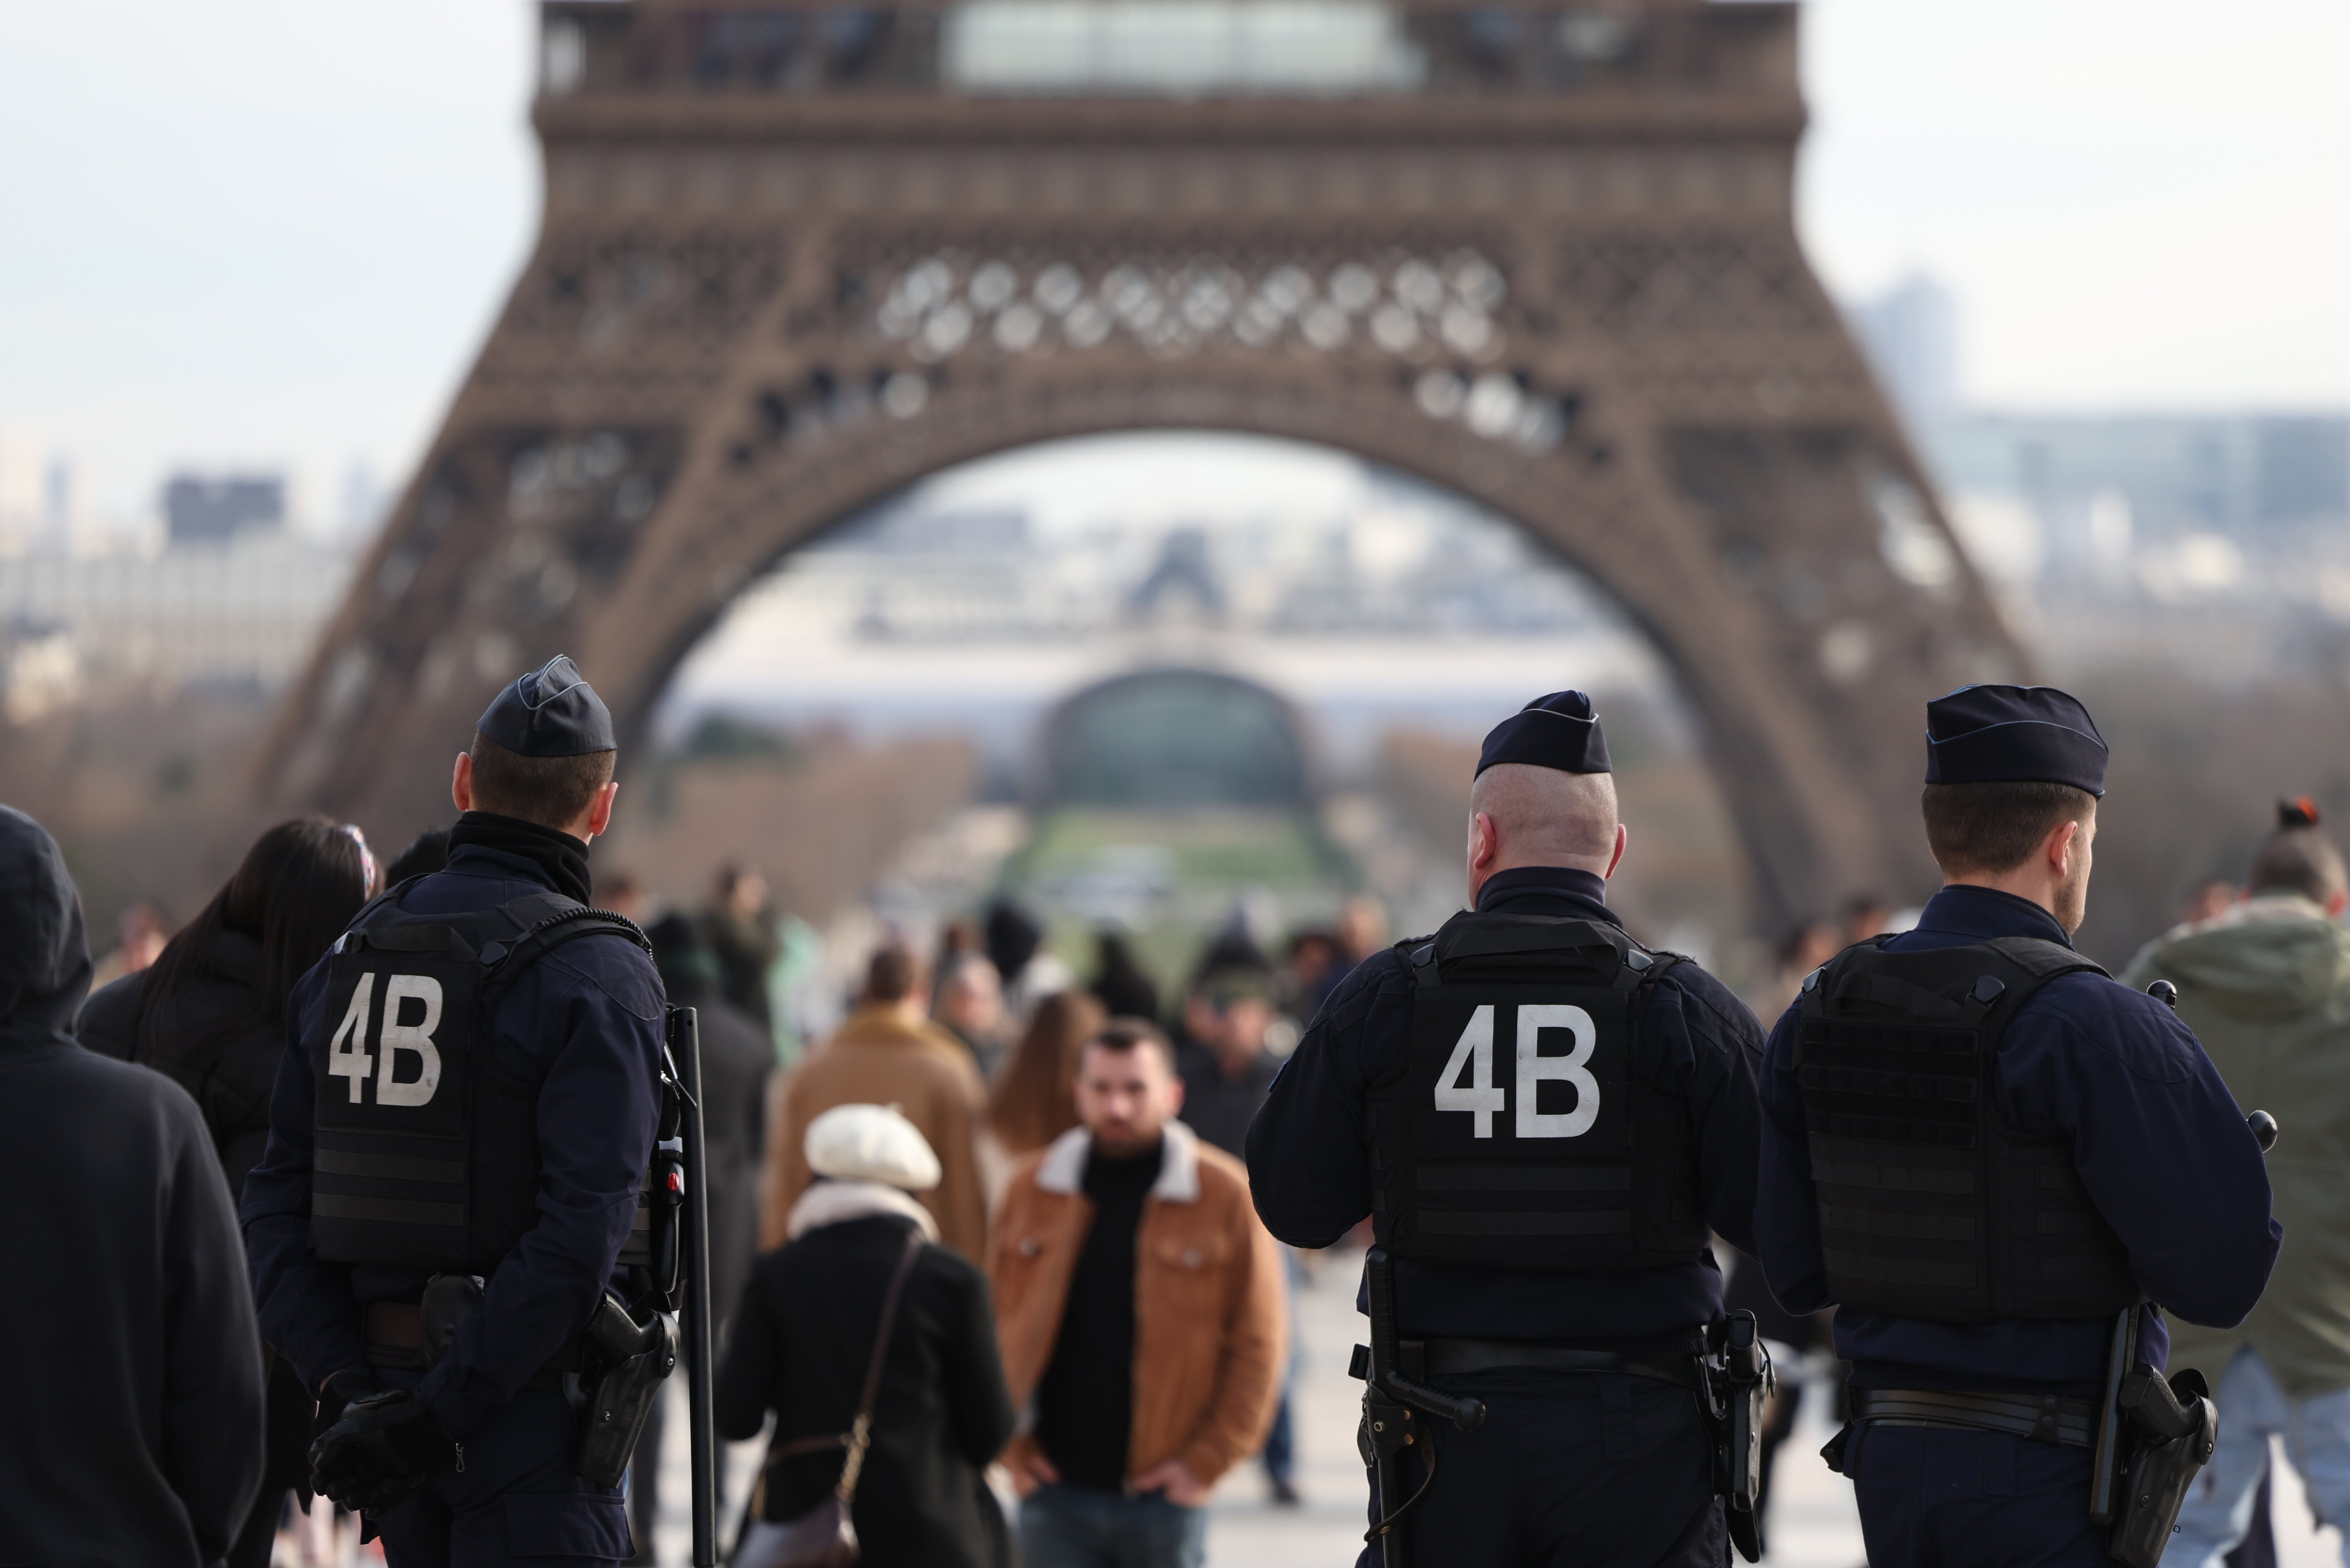 À partir des chiffres de la sécurité, arrondissement par arrondissement, découvrez notre classement exclusif des secteurs les plus sûrs de Paris. LP/Arnaud Journois